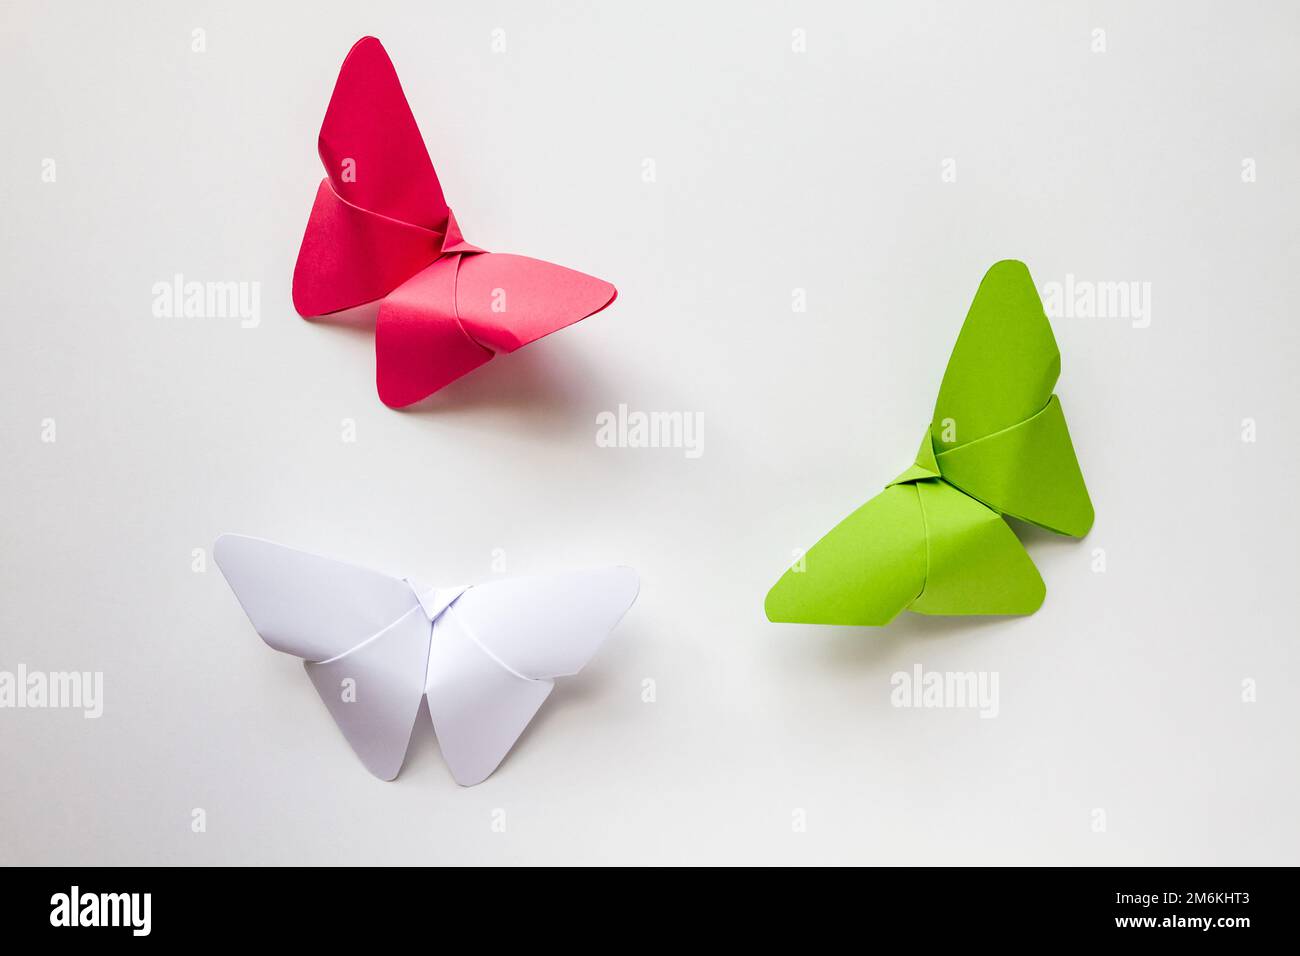 Origami farfalla di carta verde, rossa e bianca isolato su sfondo bianco  Foto stock - Alamy